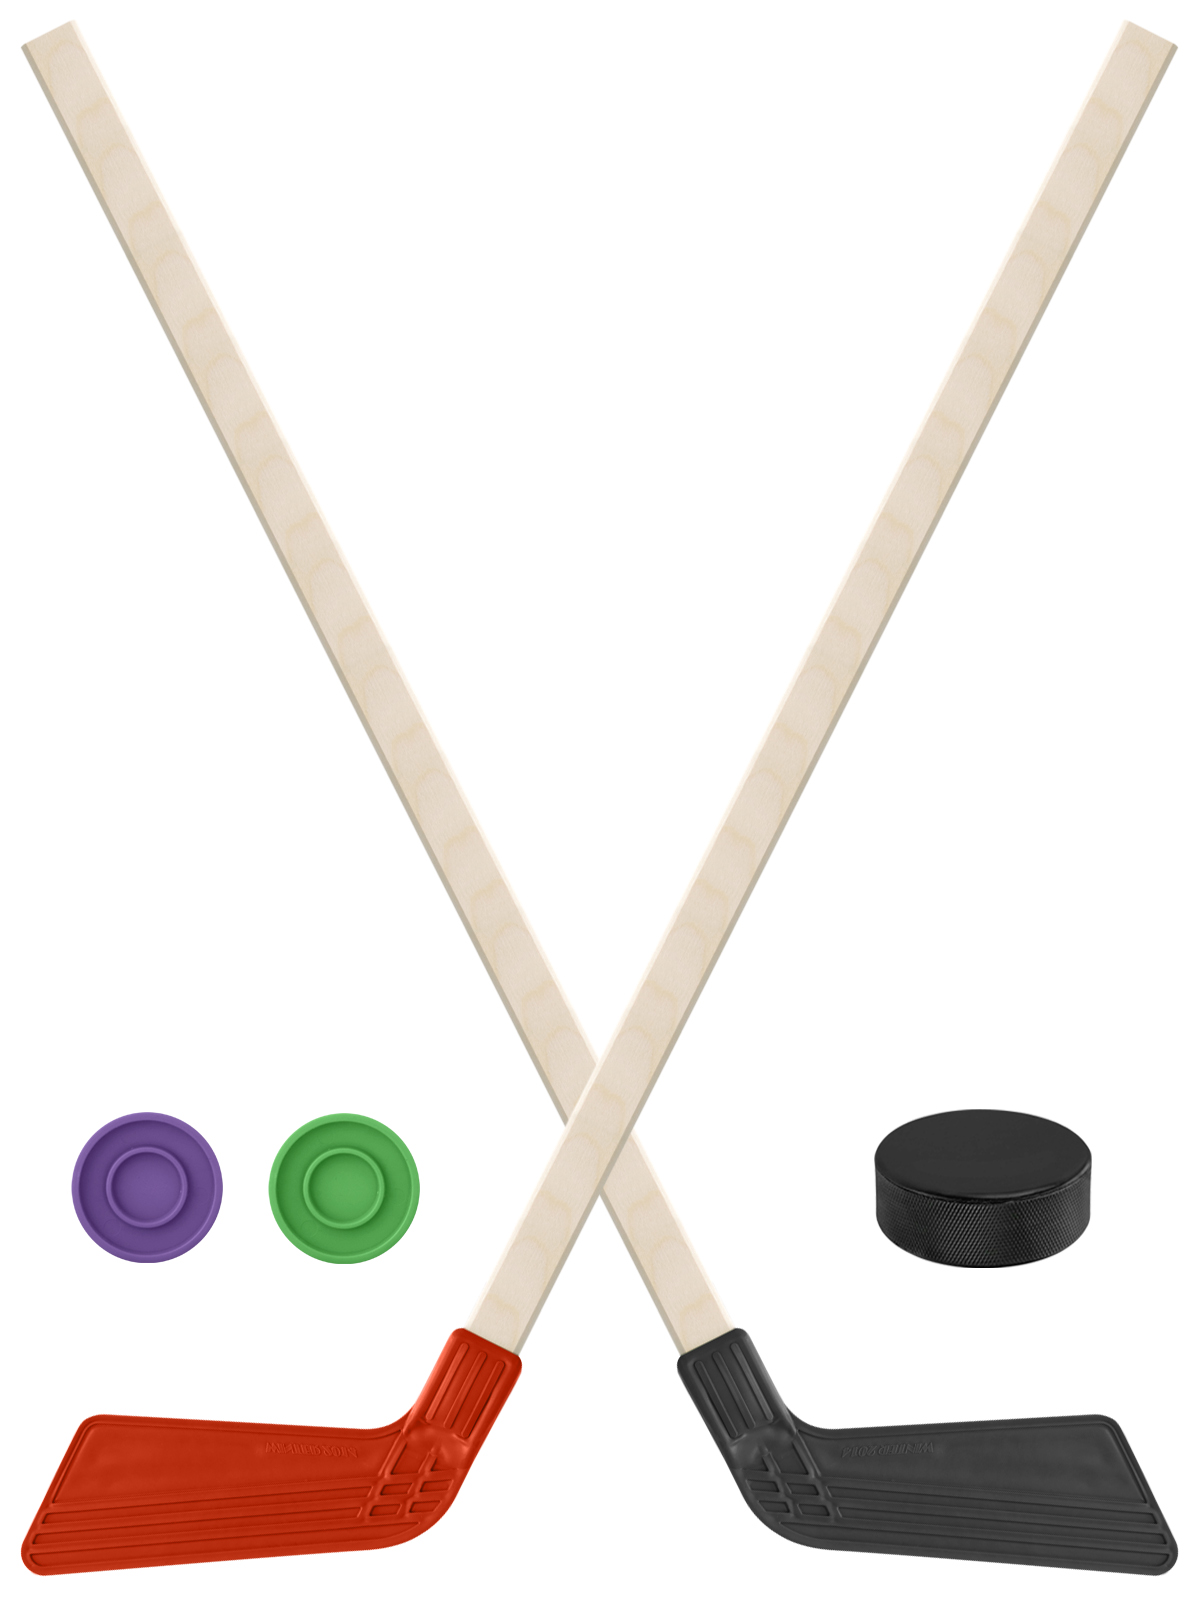 Детский хоккейный набор Задира-плюс  Клюшка хоккейная 2шт(красн,чёрн)+2 шайбы+Шайба 75 мм детский хоккейный набор задира плюс 3 в 1 клюшка хоккейная 80 см 2зел 1черн 3 шайбы